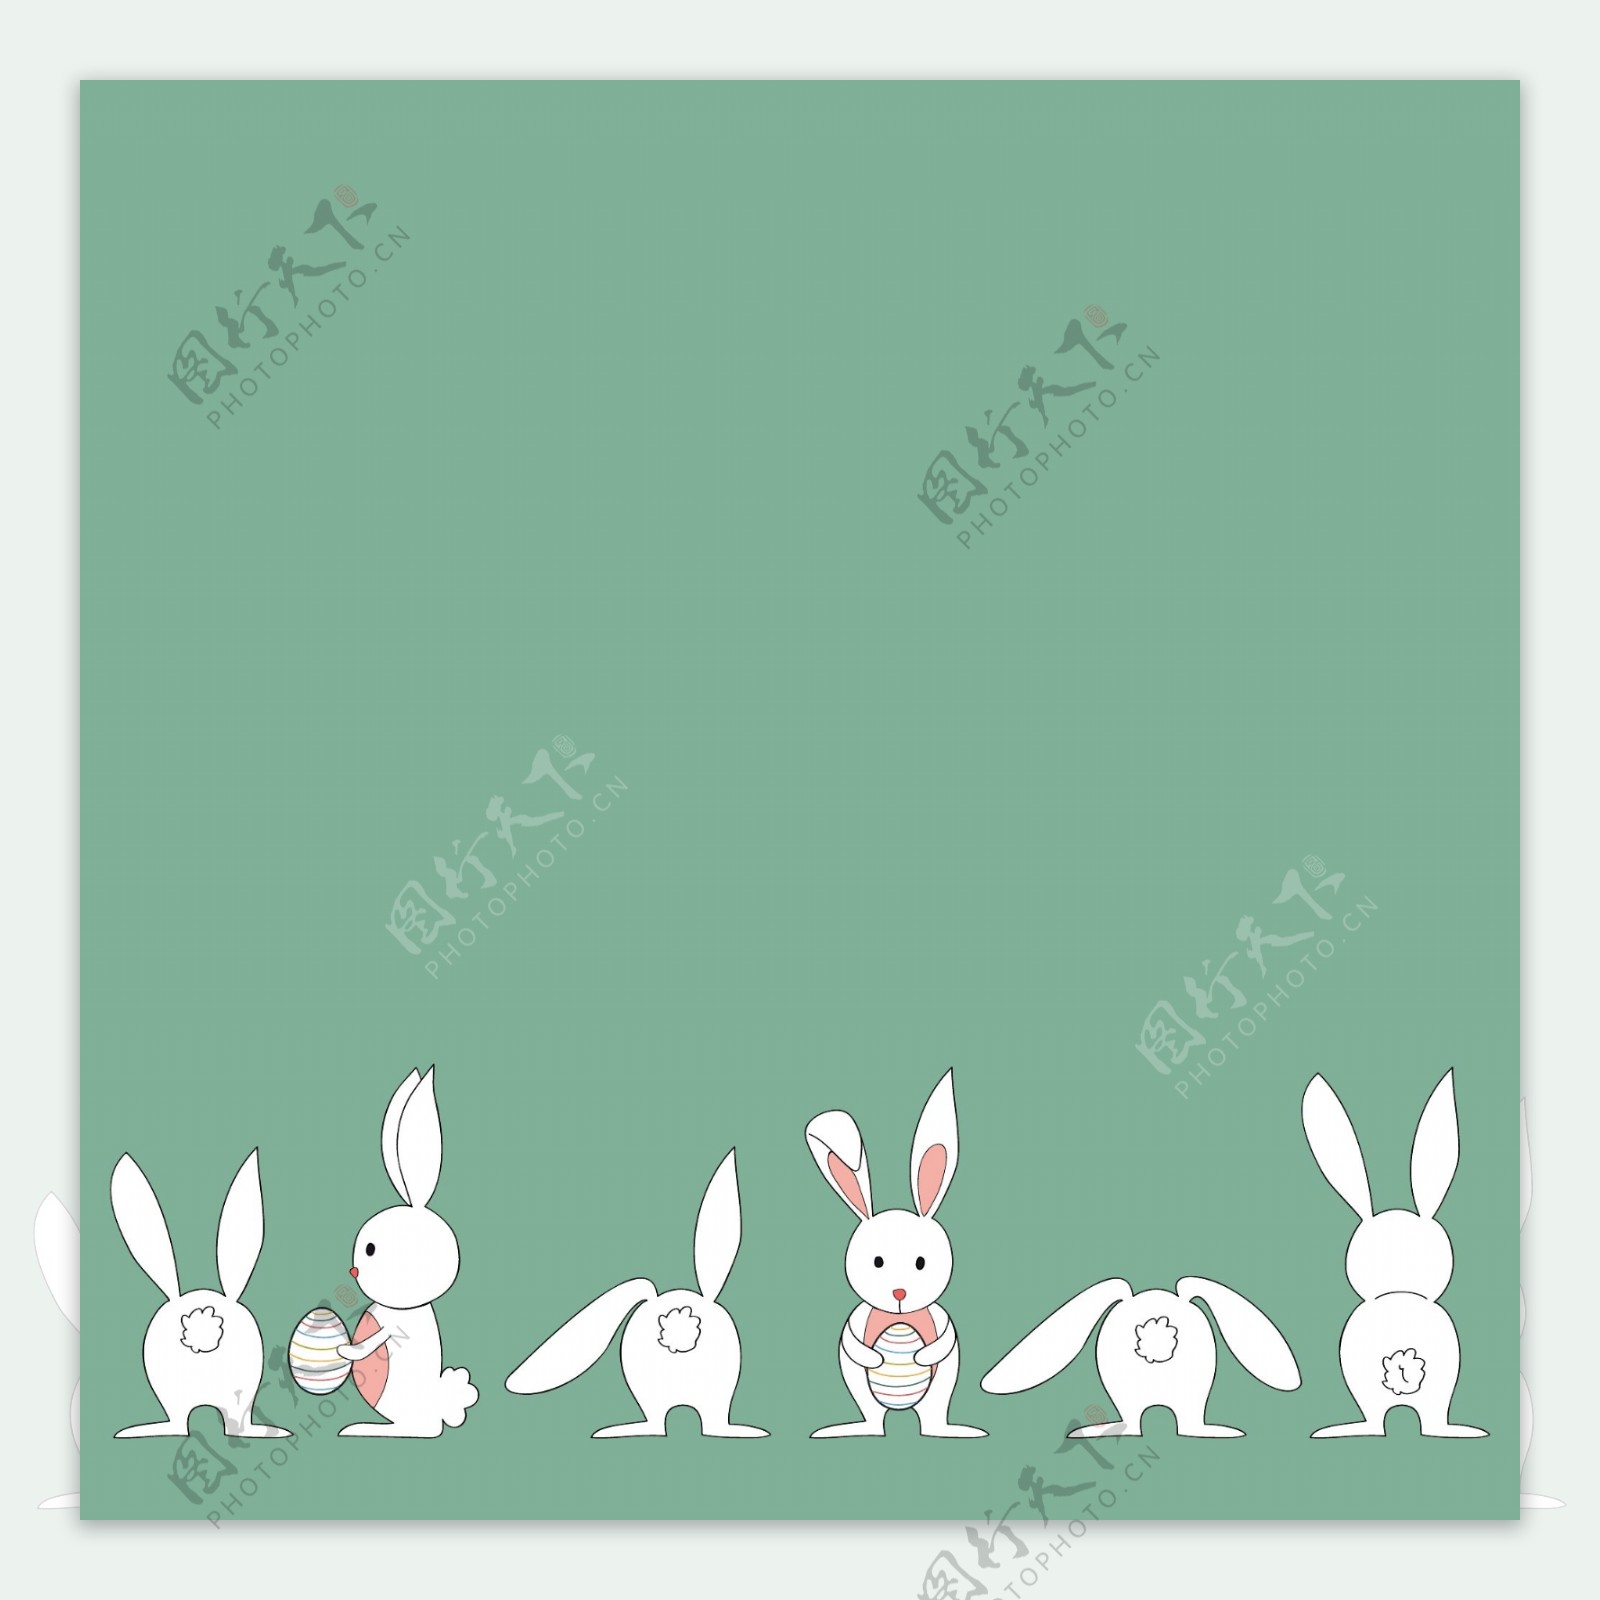 抱彩蛋的兔子简笔画矢量图